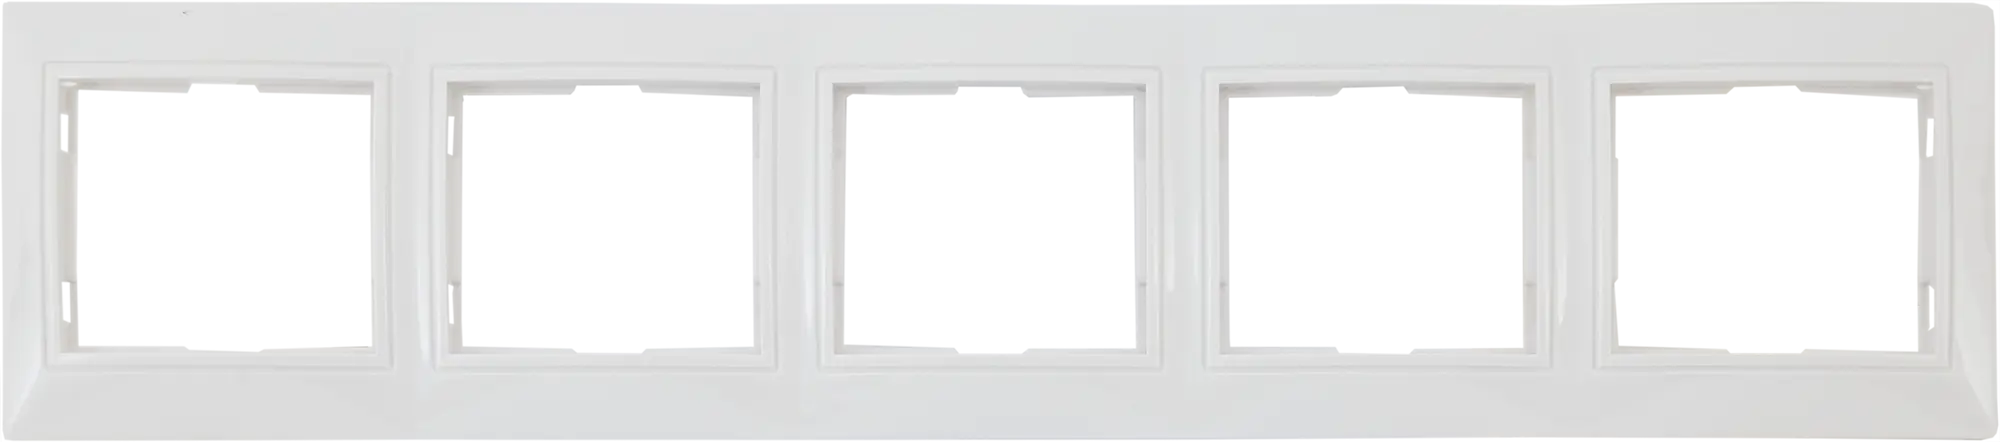 Рамка для розеток и выключателей горизонтальная Таймыр 5 постов, цвет белый горизонтальная трехпостовая рамка tdm